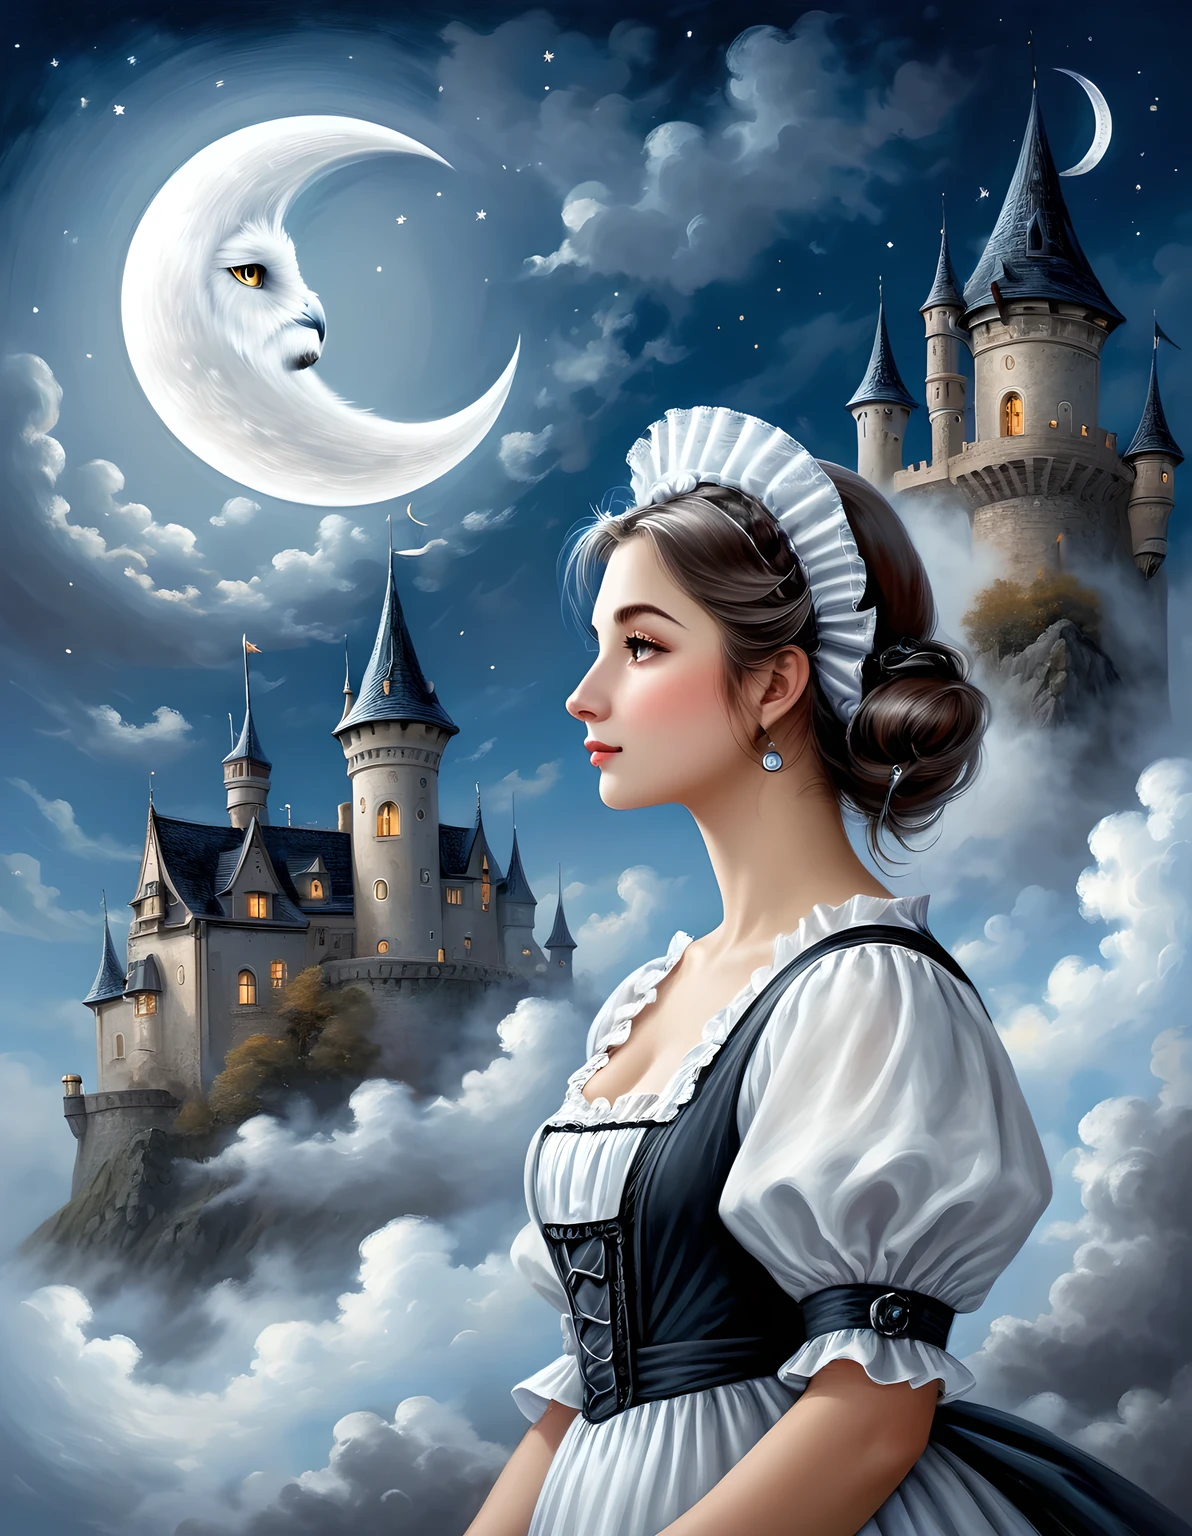 充滿精緻和忠誠光環的女僕插圖, 轮廓, 鮮明的對比, 溫柔的觸摸, 準確的細節, 精確, 蓬鬆的雲和新月, 高品質油畫, 令人驚嘆的精美觸控渲染, 藝術雲與月亮, 幻想, 霧氣籠罩著一座古老的城堡 , 飛翔的貓頭鷹